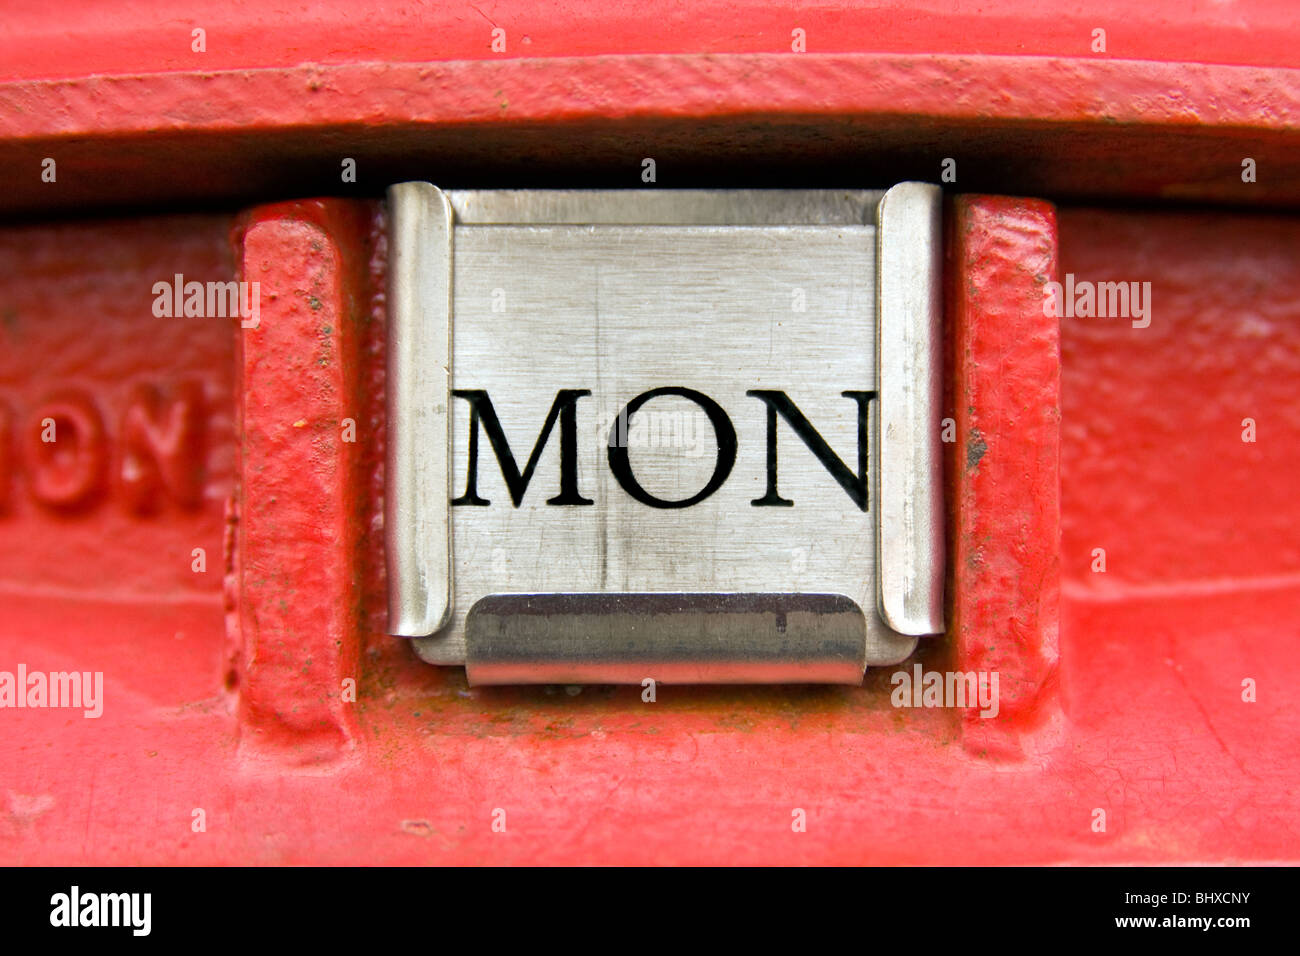 Lunedì - La più temuta Giorno della settimana come visualizzato su un rosso inglese Post Box. Foto Stock